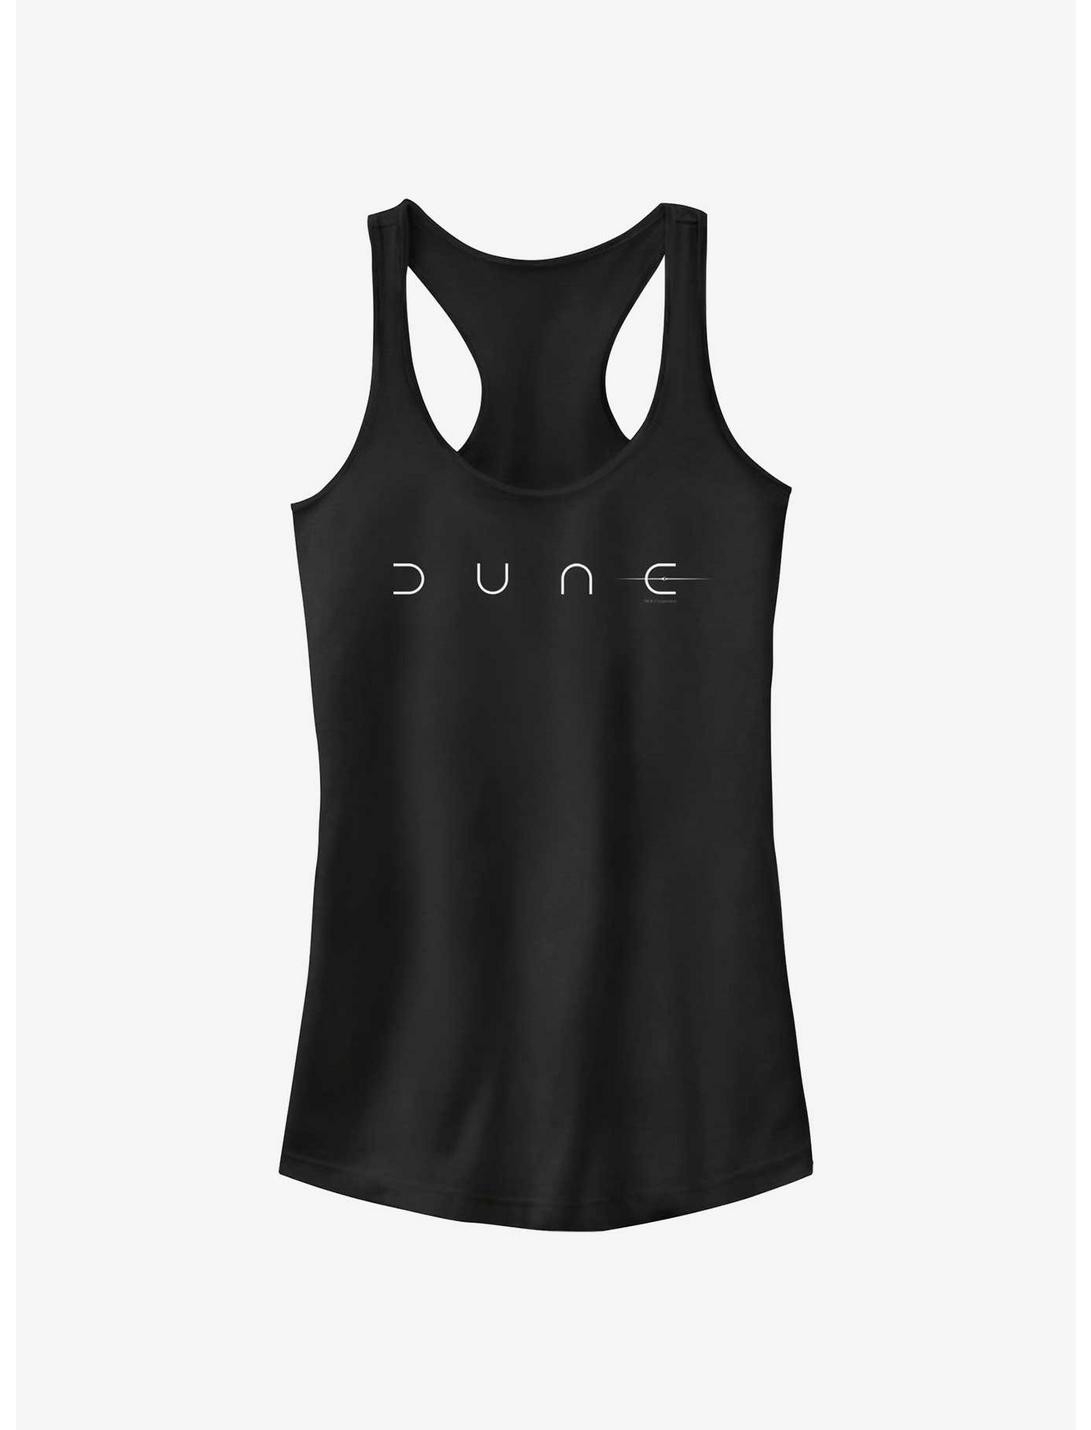 Dune: Part Two Logo Girls Tank, BLACK, hi-res